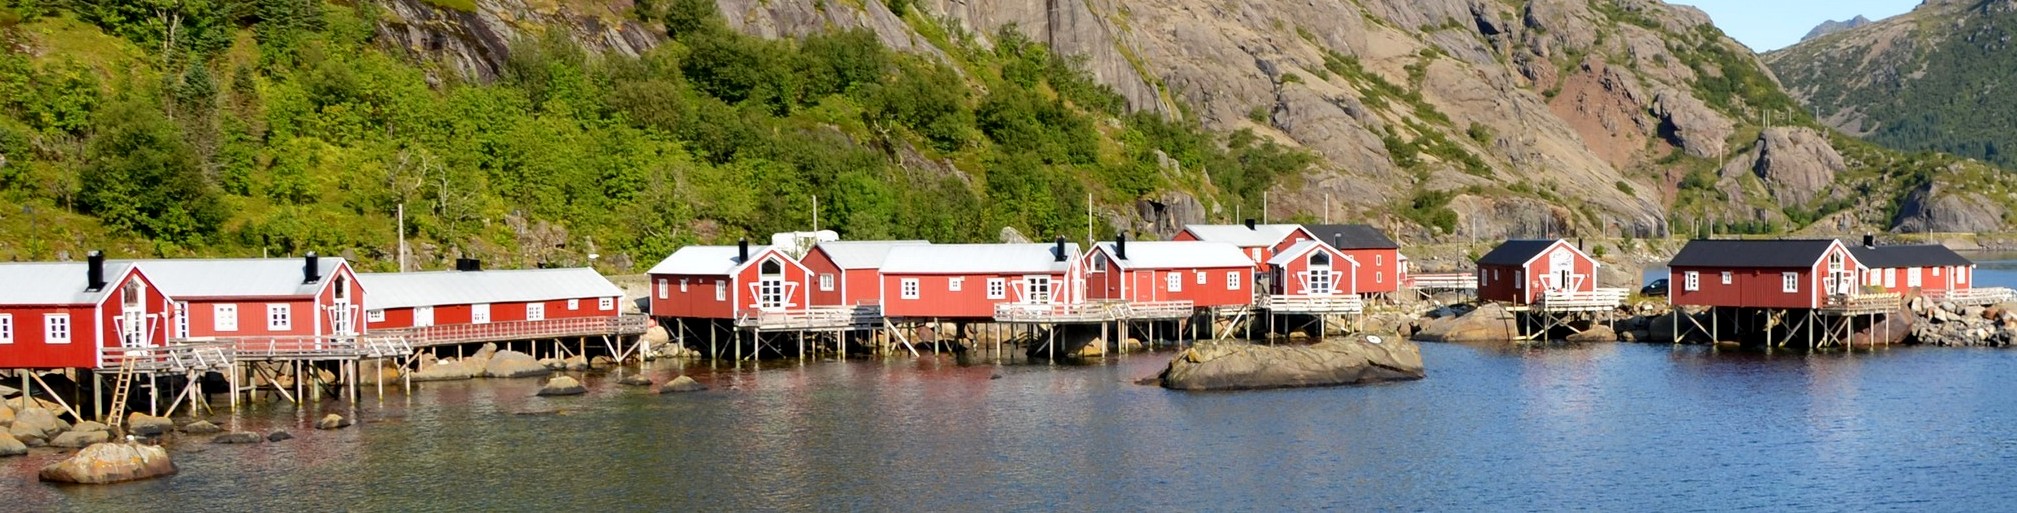 Aktuální podmínky pro cestování do Norska - COVID-19